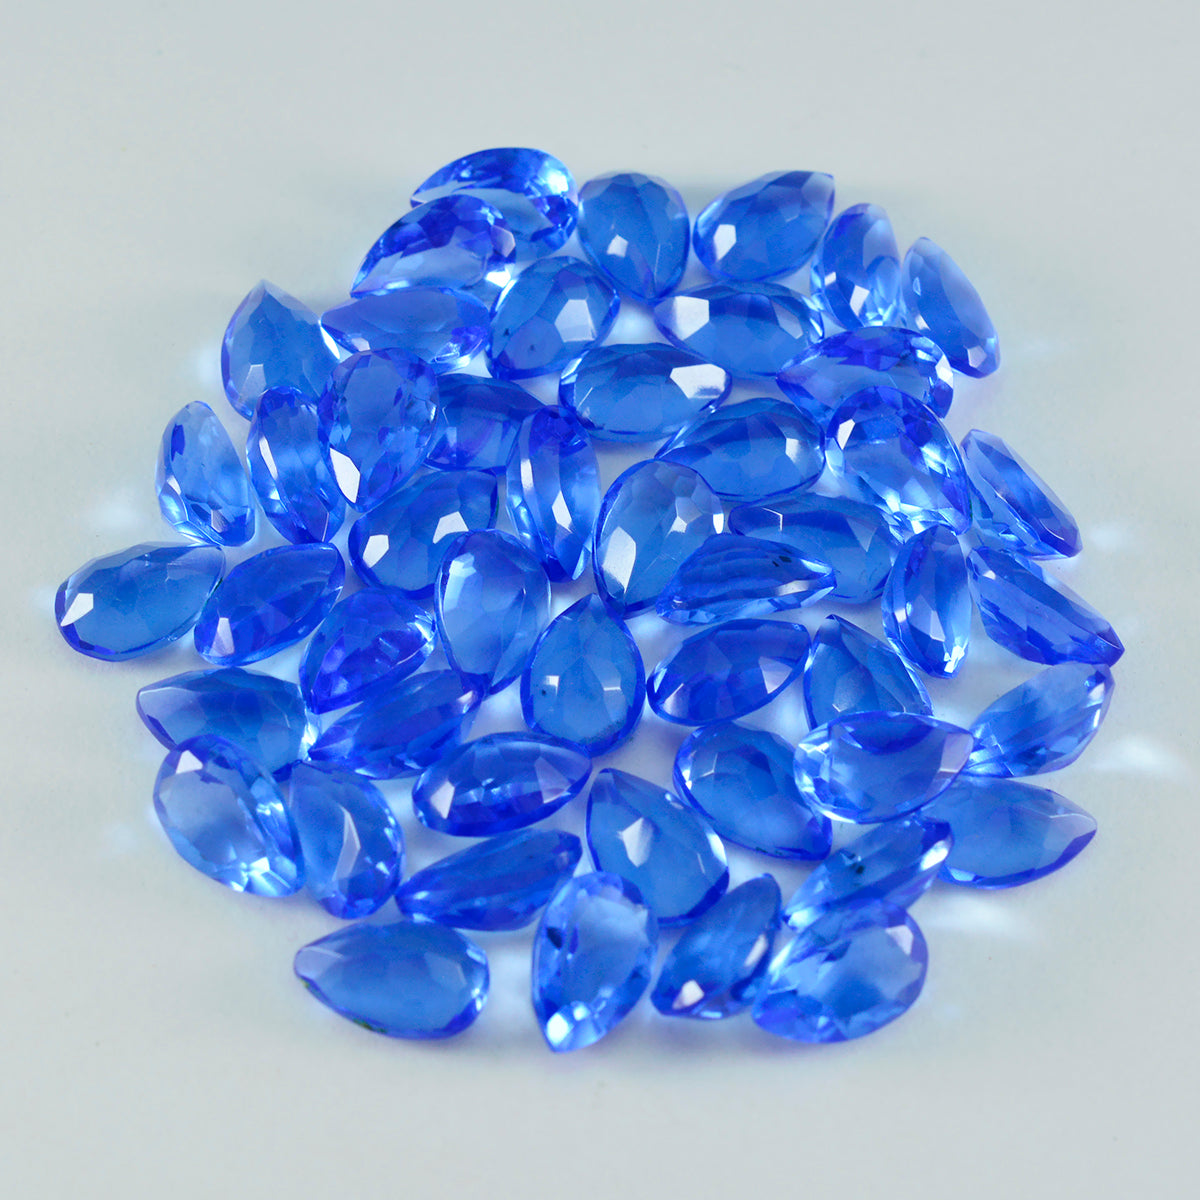 riyogems 1 шт. синий сапфир cz ограненный 4x6 мм грушевидной формы красивый качественный драгоценный камень